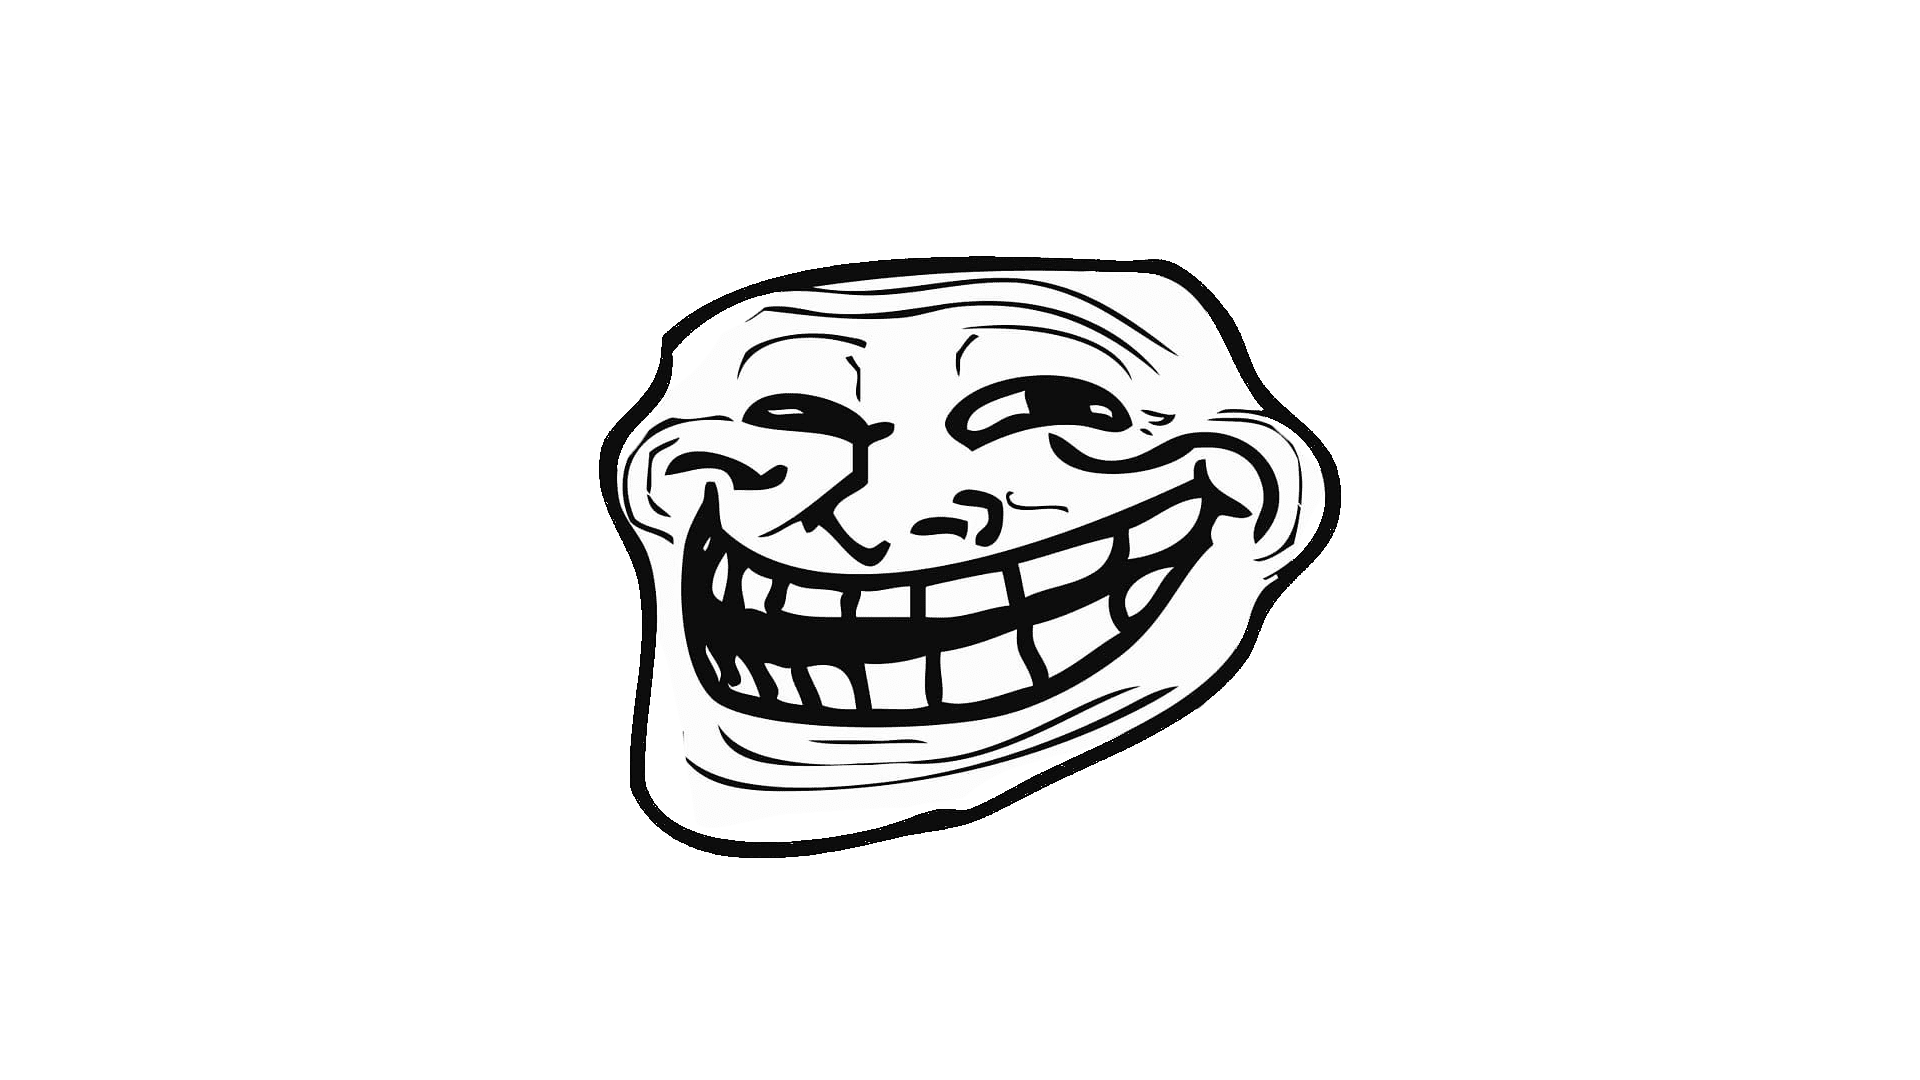 Trollface mém, a trollok és trollkodás internetes jelképe.